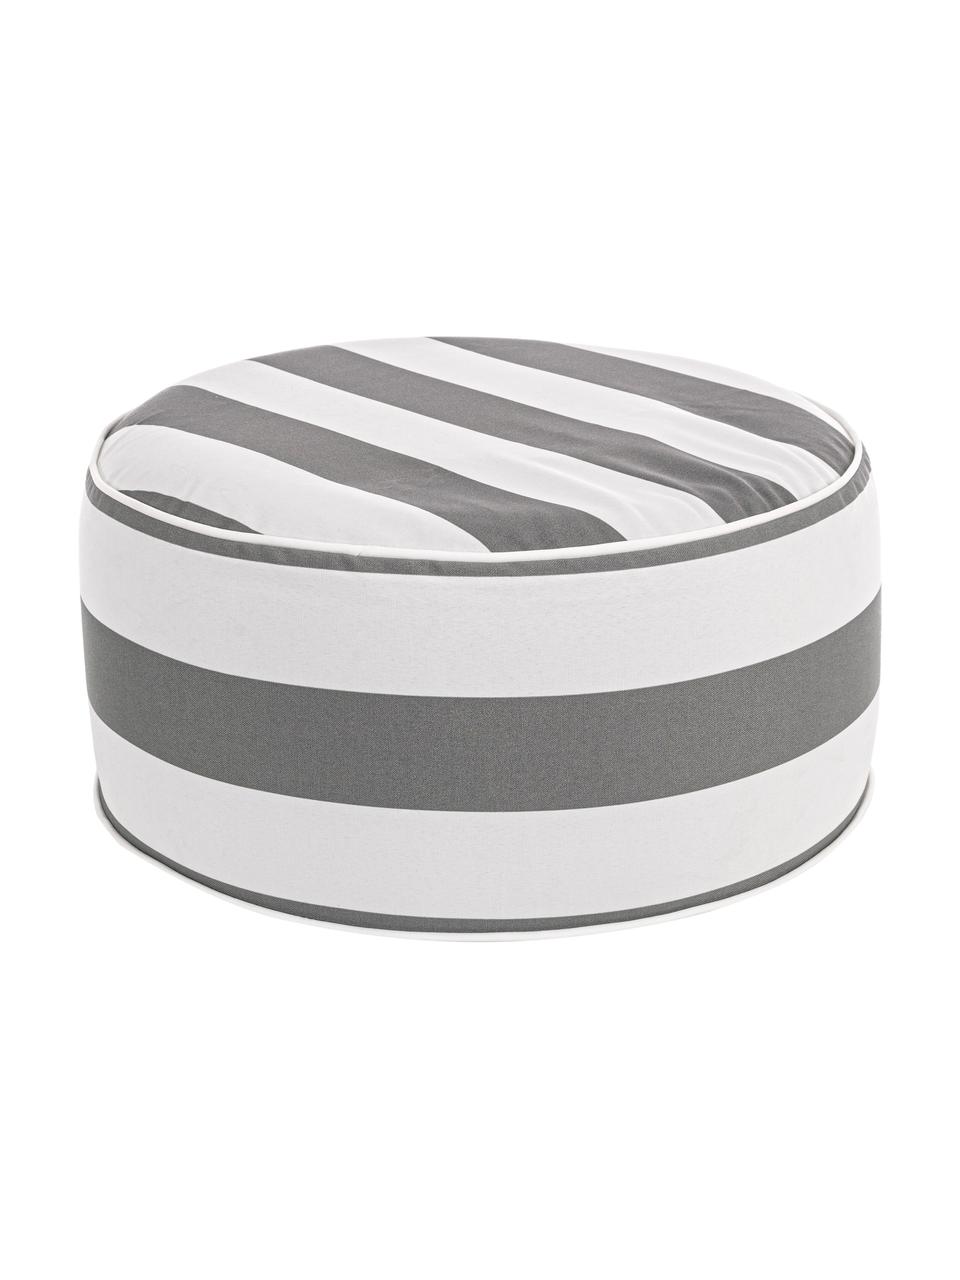 Pouf gonfiabile da esterno color bianco/grigio Stripes, Rivestimento: 100% tessuto in poliester, Bianco, grigio, rigato, Ø 53 x Alt. 23 cm